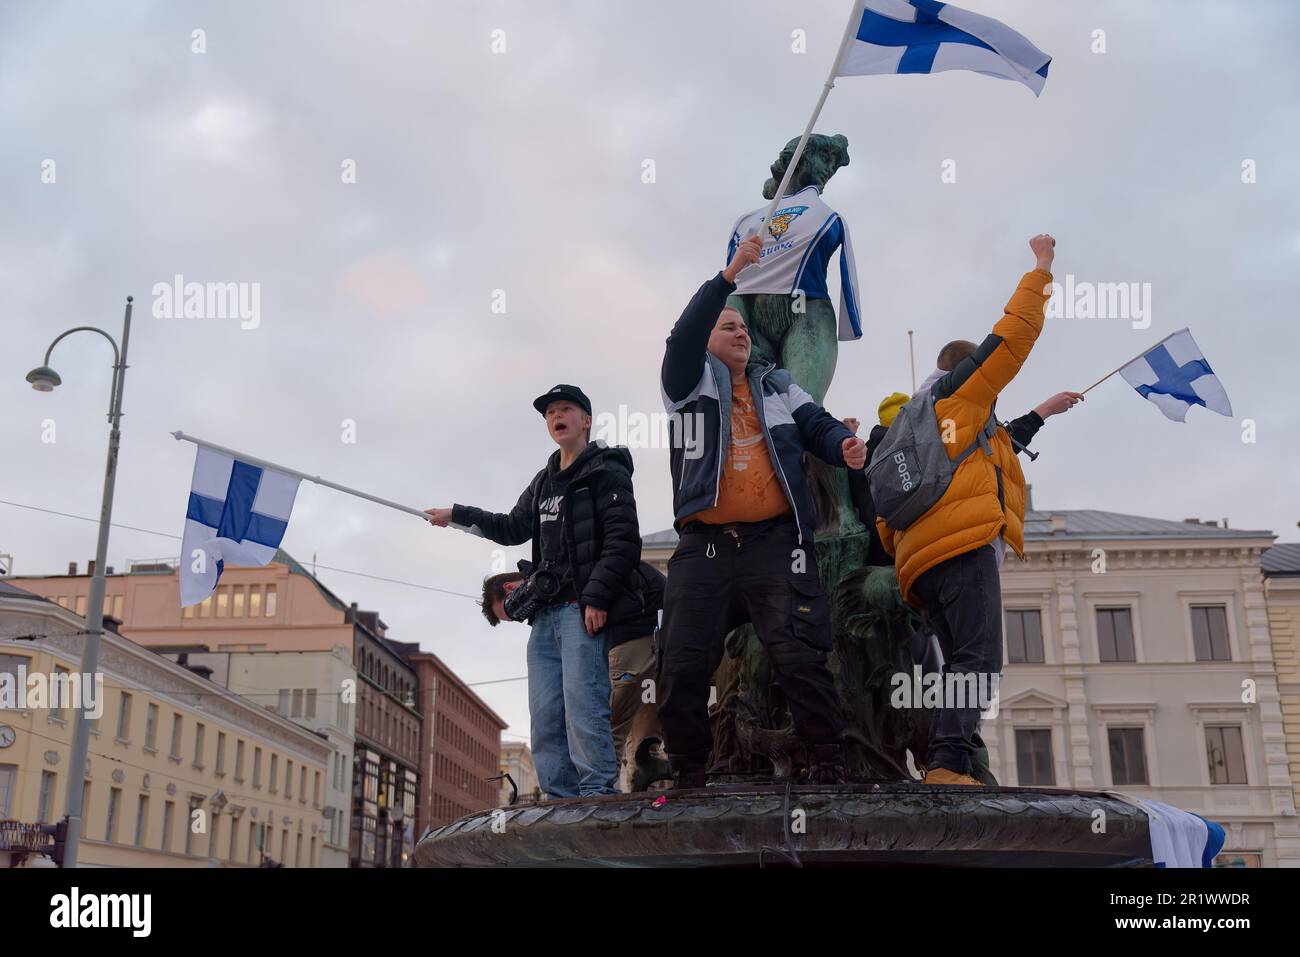 Helsinki, Finnland - 20. Februar 2022: Finnische Eishockeyfans feiern bei den olympischen spielen 2022 in Peking Finnlands erste olympische Goldmedaille im Eishockey Stockfoto